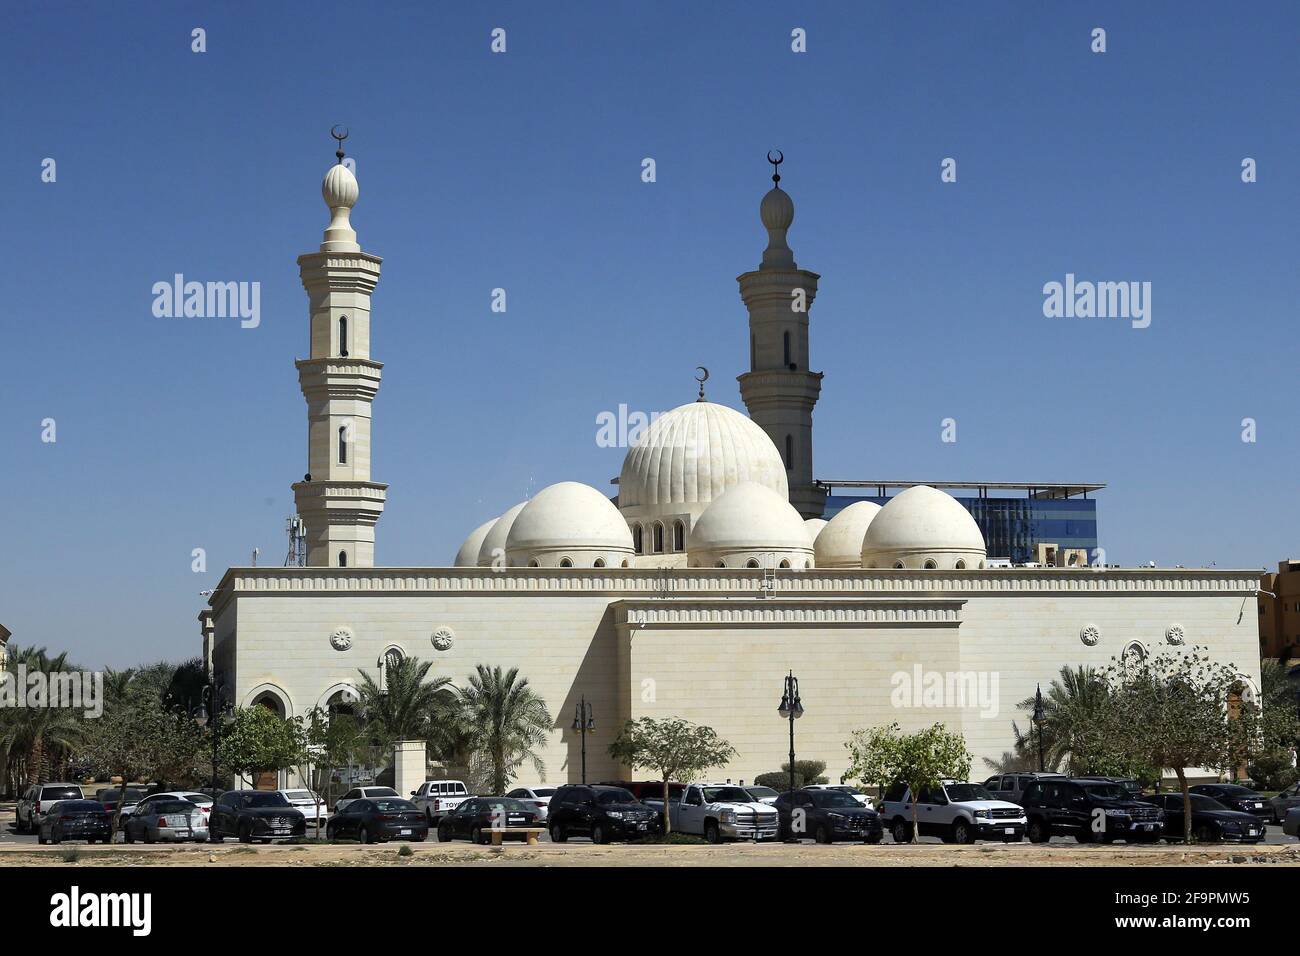 26.02.2020, Riad, , Arabia Saudita - Moschea. 00S200226D297CAROEX.JPG [RELEASE DEL MODELLO: NO, RELEASE DELLA PROPRIETÀ: NO (c) caro images / Serge, http://www.caro-i Foto Stock